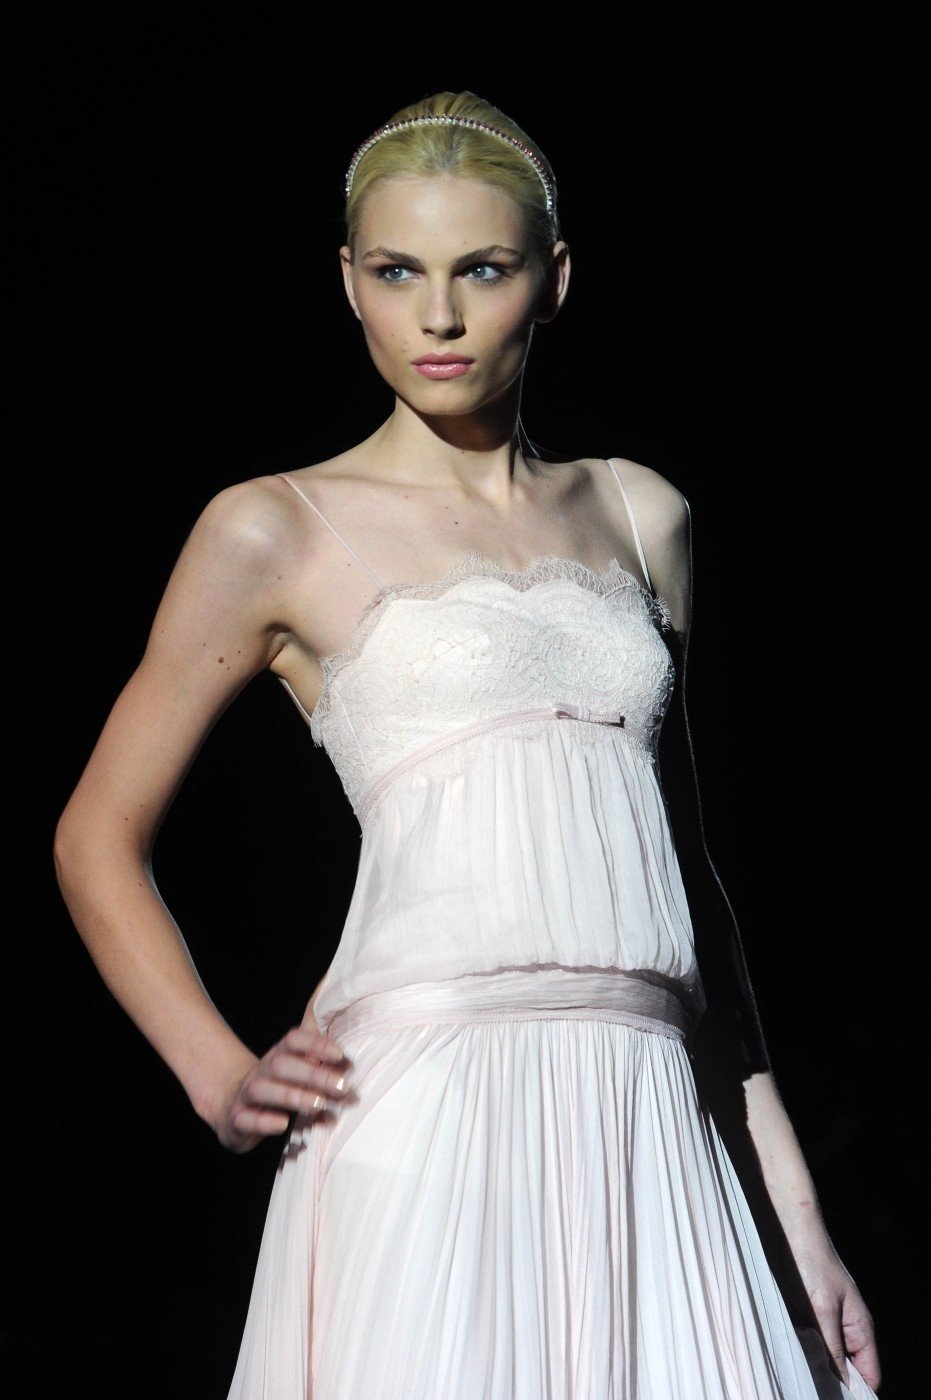 Dvacetiletý australsko-srbský model Andrej Pejic vypadal ve svatebních šatech úchvatně.